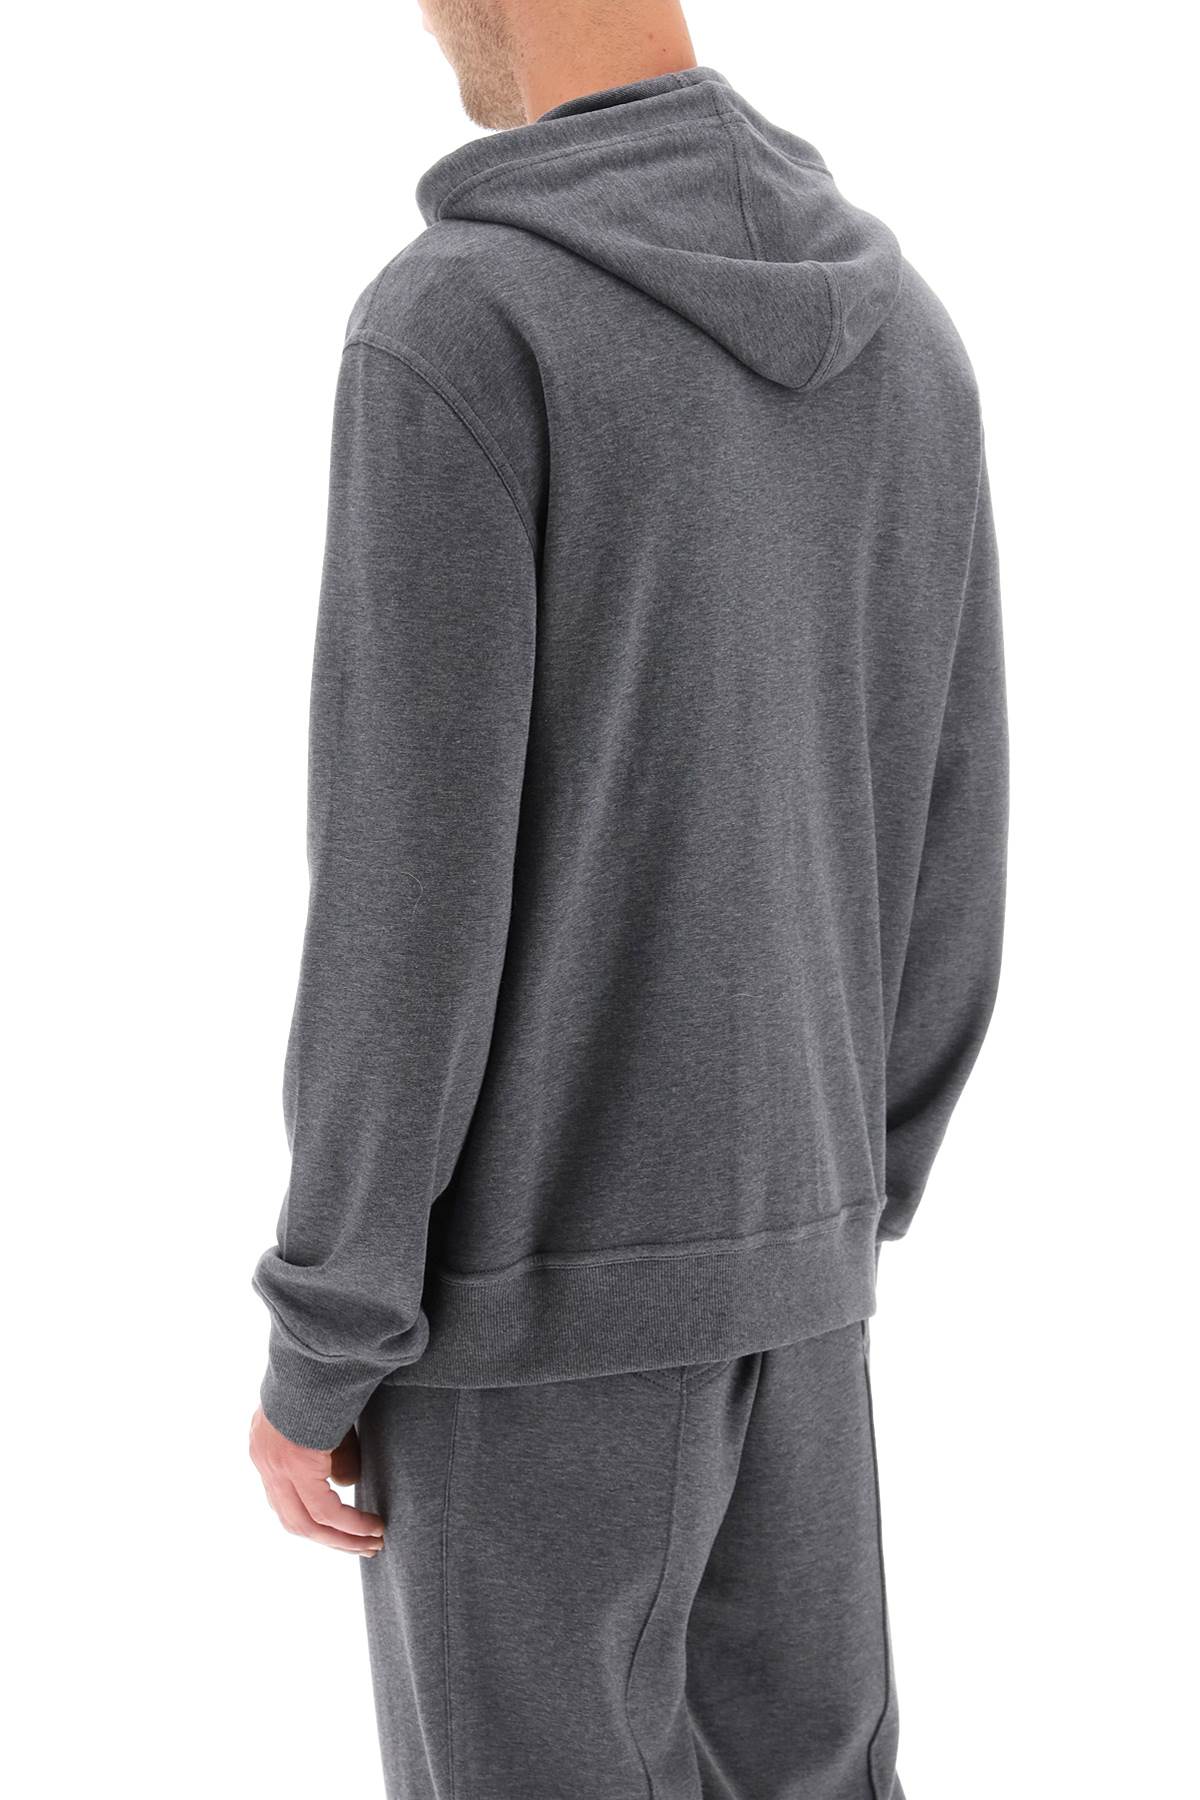 Áo hoodie zip hai chiều màu xám bằng vải cotton pha